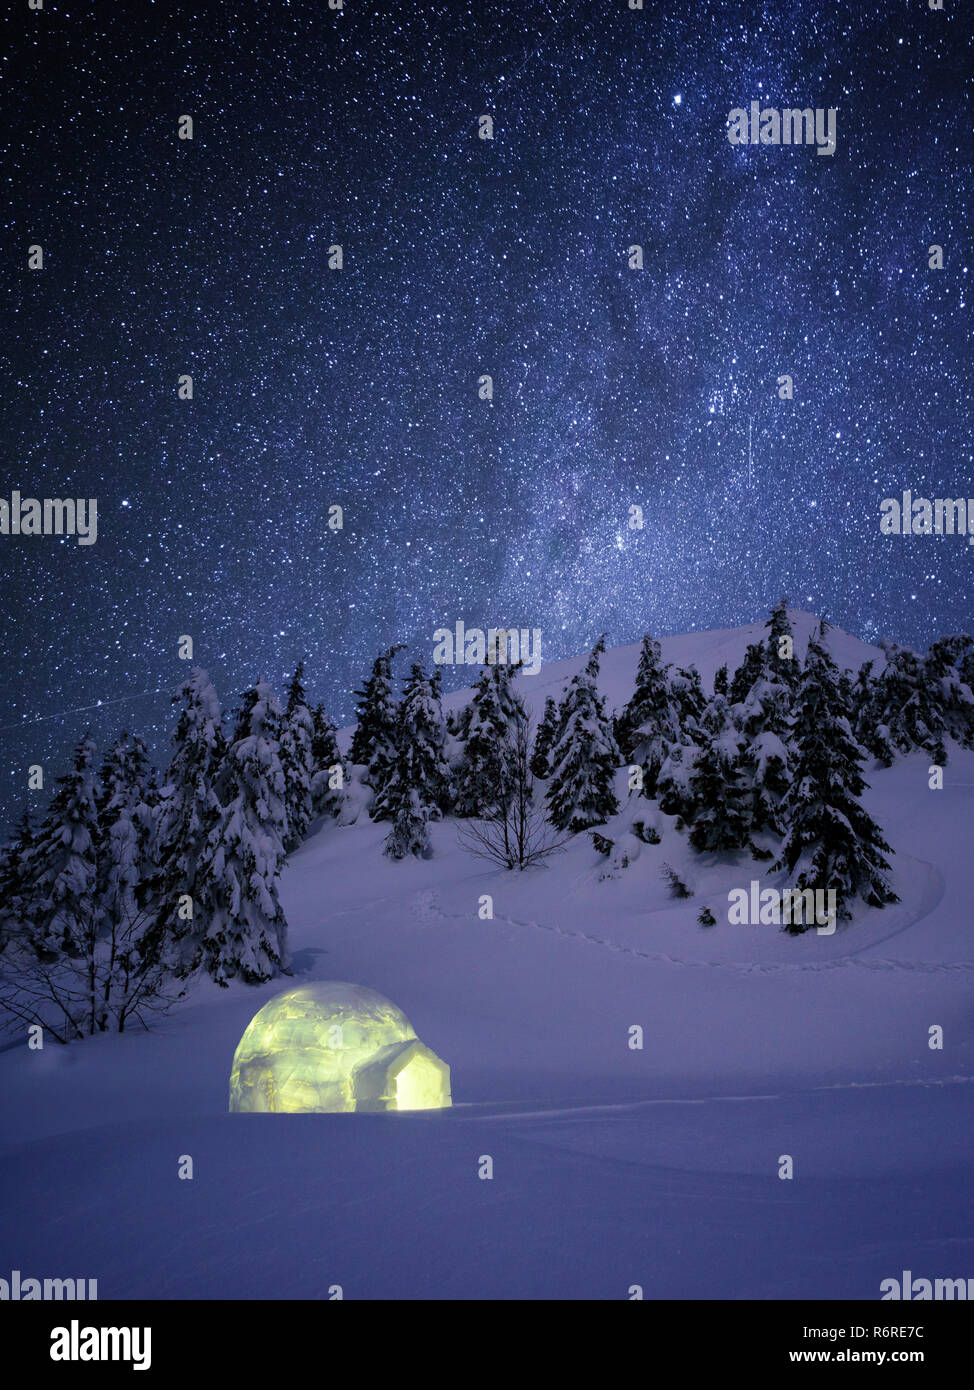 Wonderland notte d'inverno. Igloo neve nella foresta di abeti sotto un cielo stellato. Un rifugio in montagna escursione invernale Foto Stock